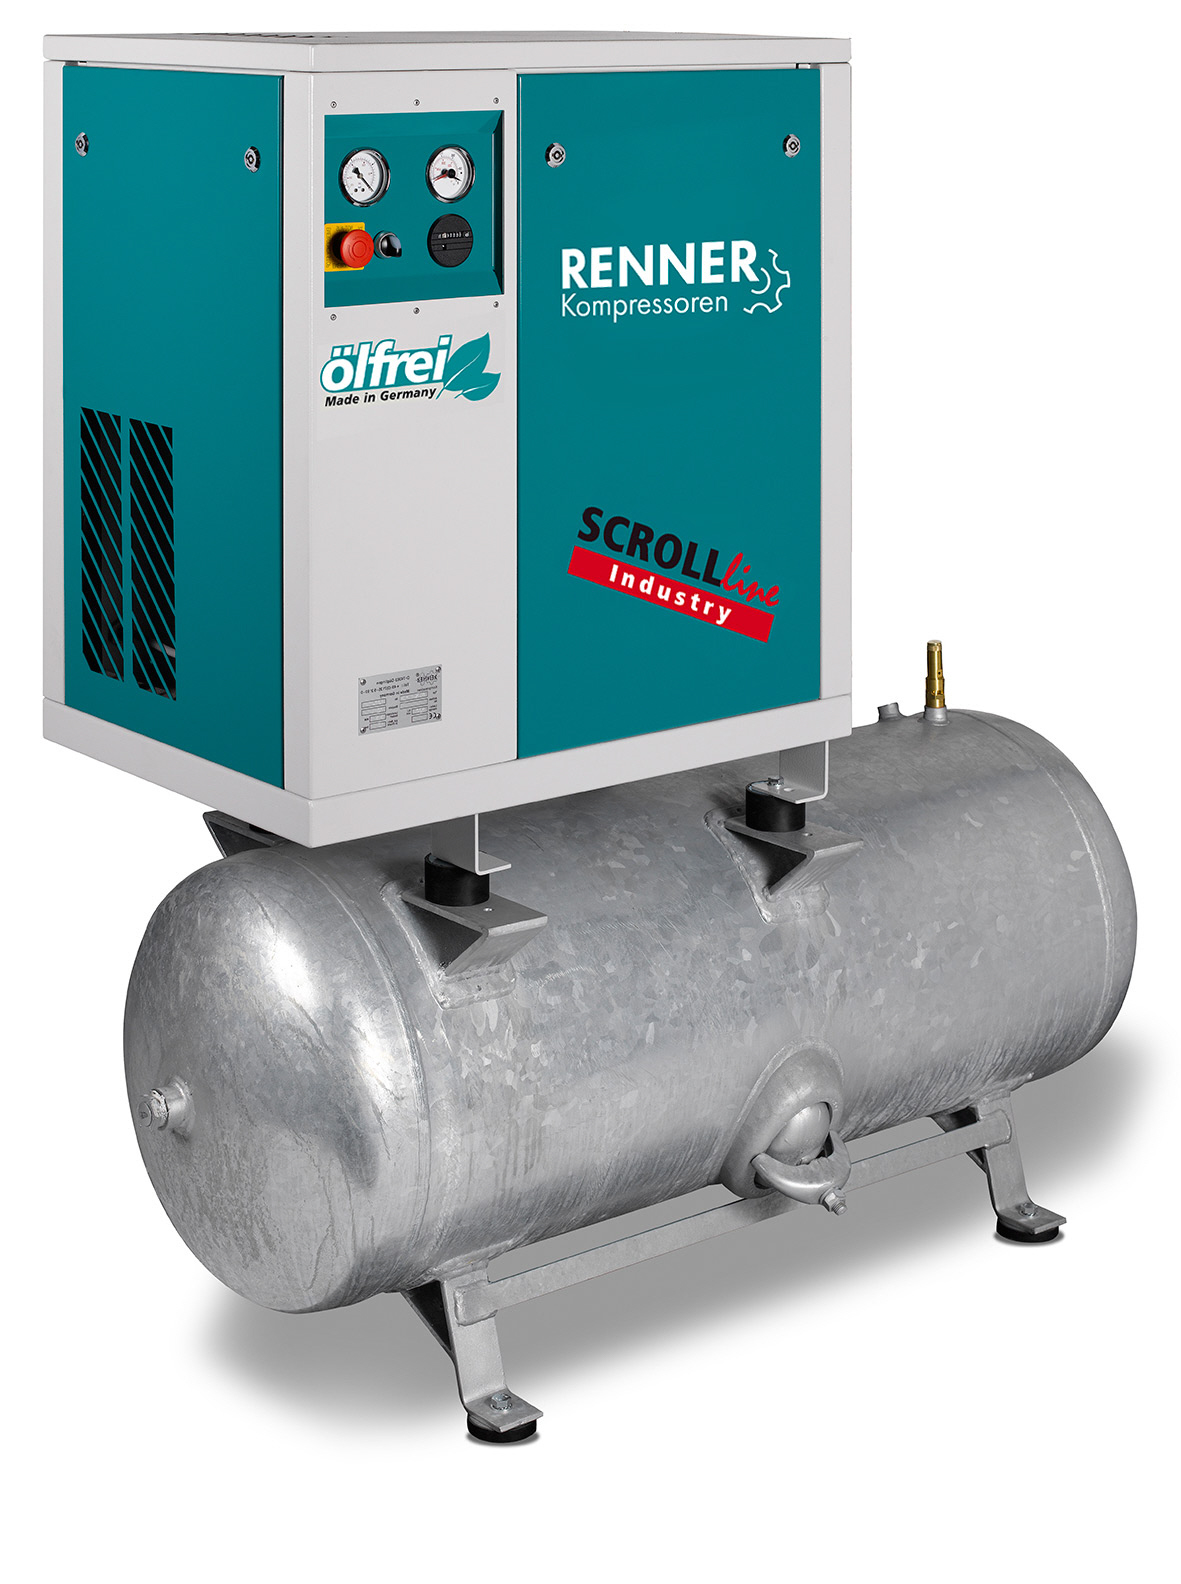 RENNER SCROLL-Kompressor SLD-I 1,5 mit verzinktem 250 Liter Druckluftbehälter Stationäre ölfreie Kompressoren